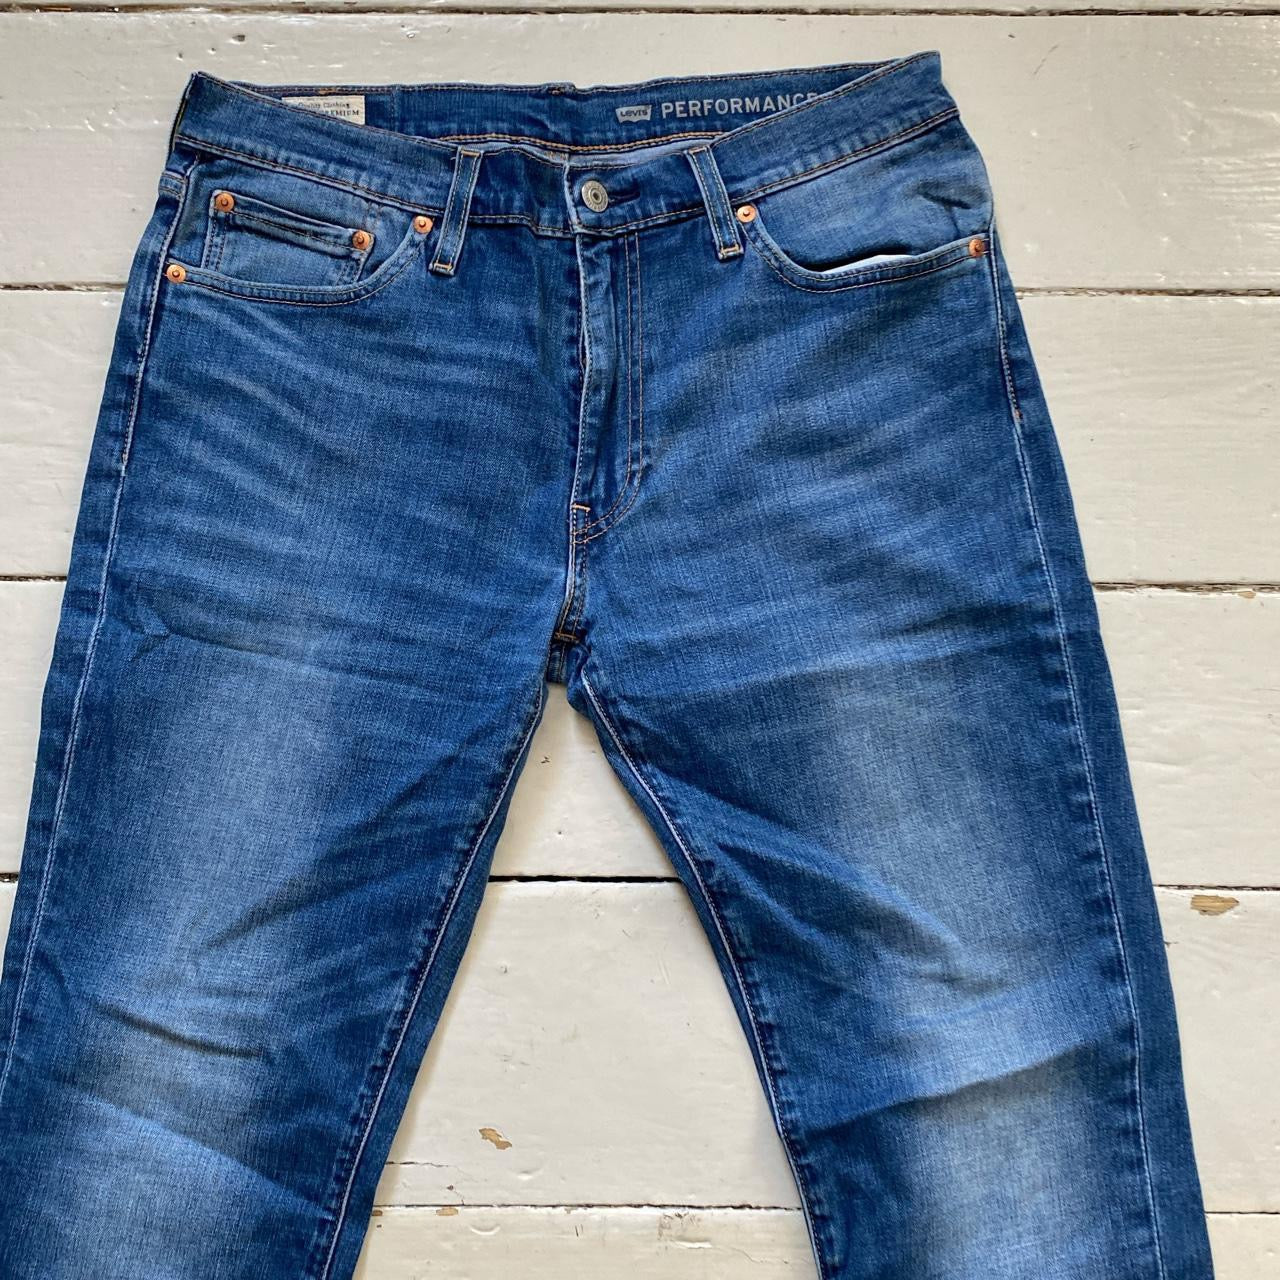 Levis 511 Light Blue Jeans (33/30)